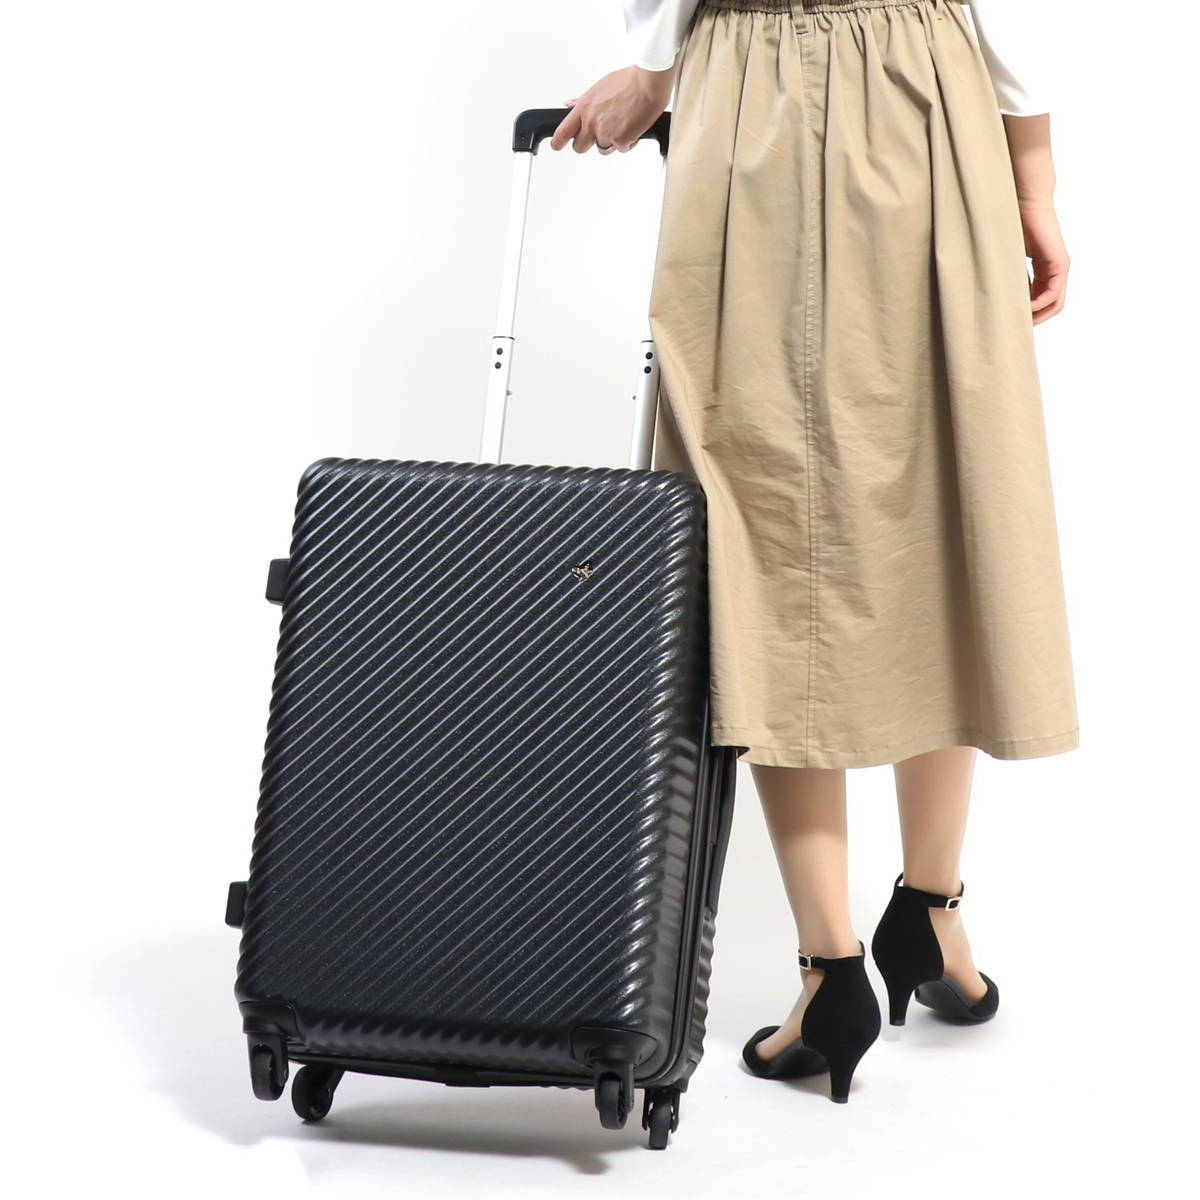 ハント スーツケース マイン ストッパー付き 48cm 33L 05745 機内持ち込み可 48 cm 2.7kg ダリアベージュ ネット正規店 